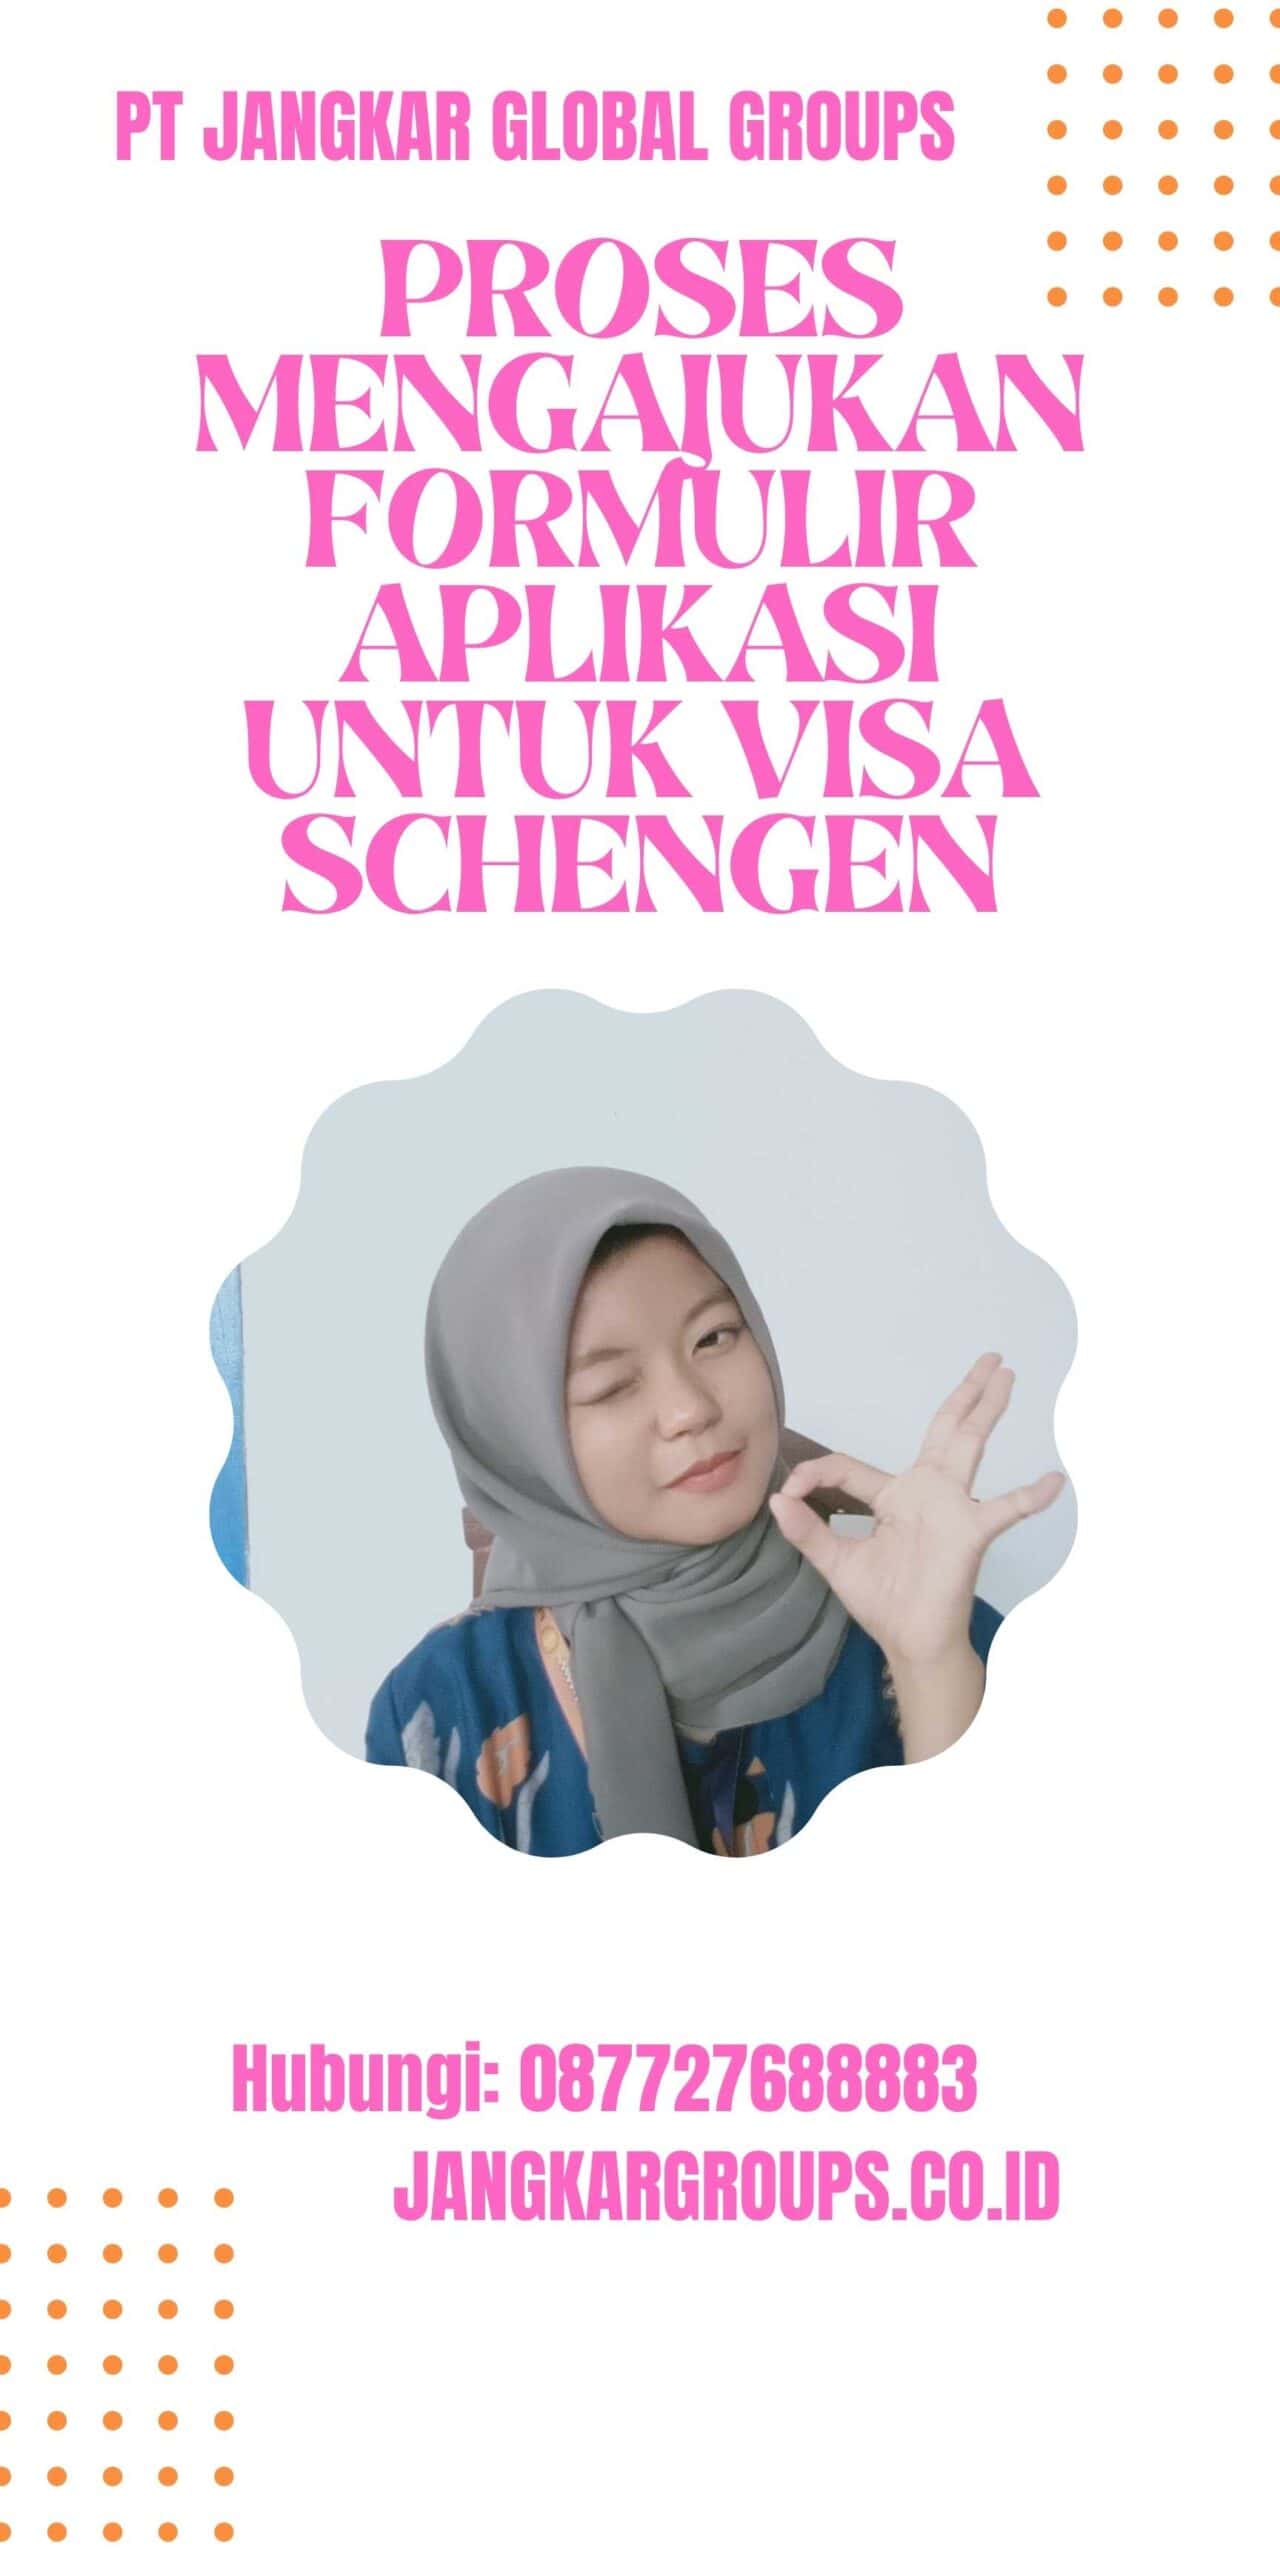 Proses Mengajukan Formulir Aplikasi untuk Visa Schengen